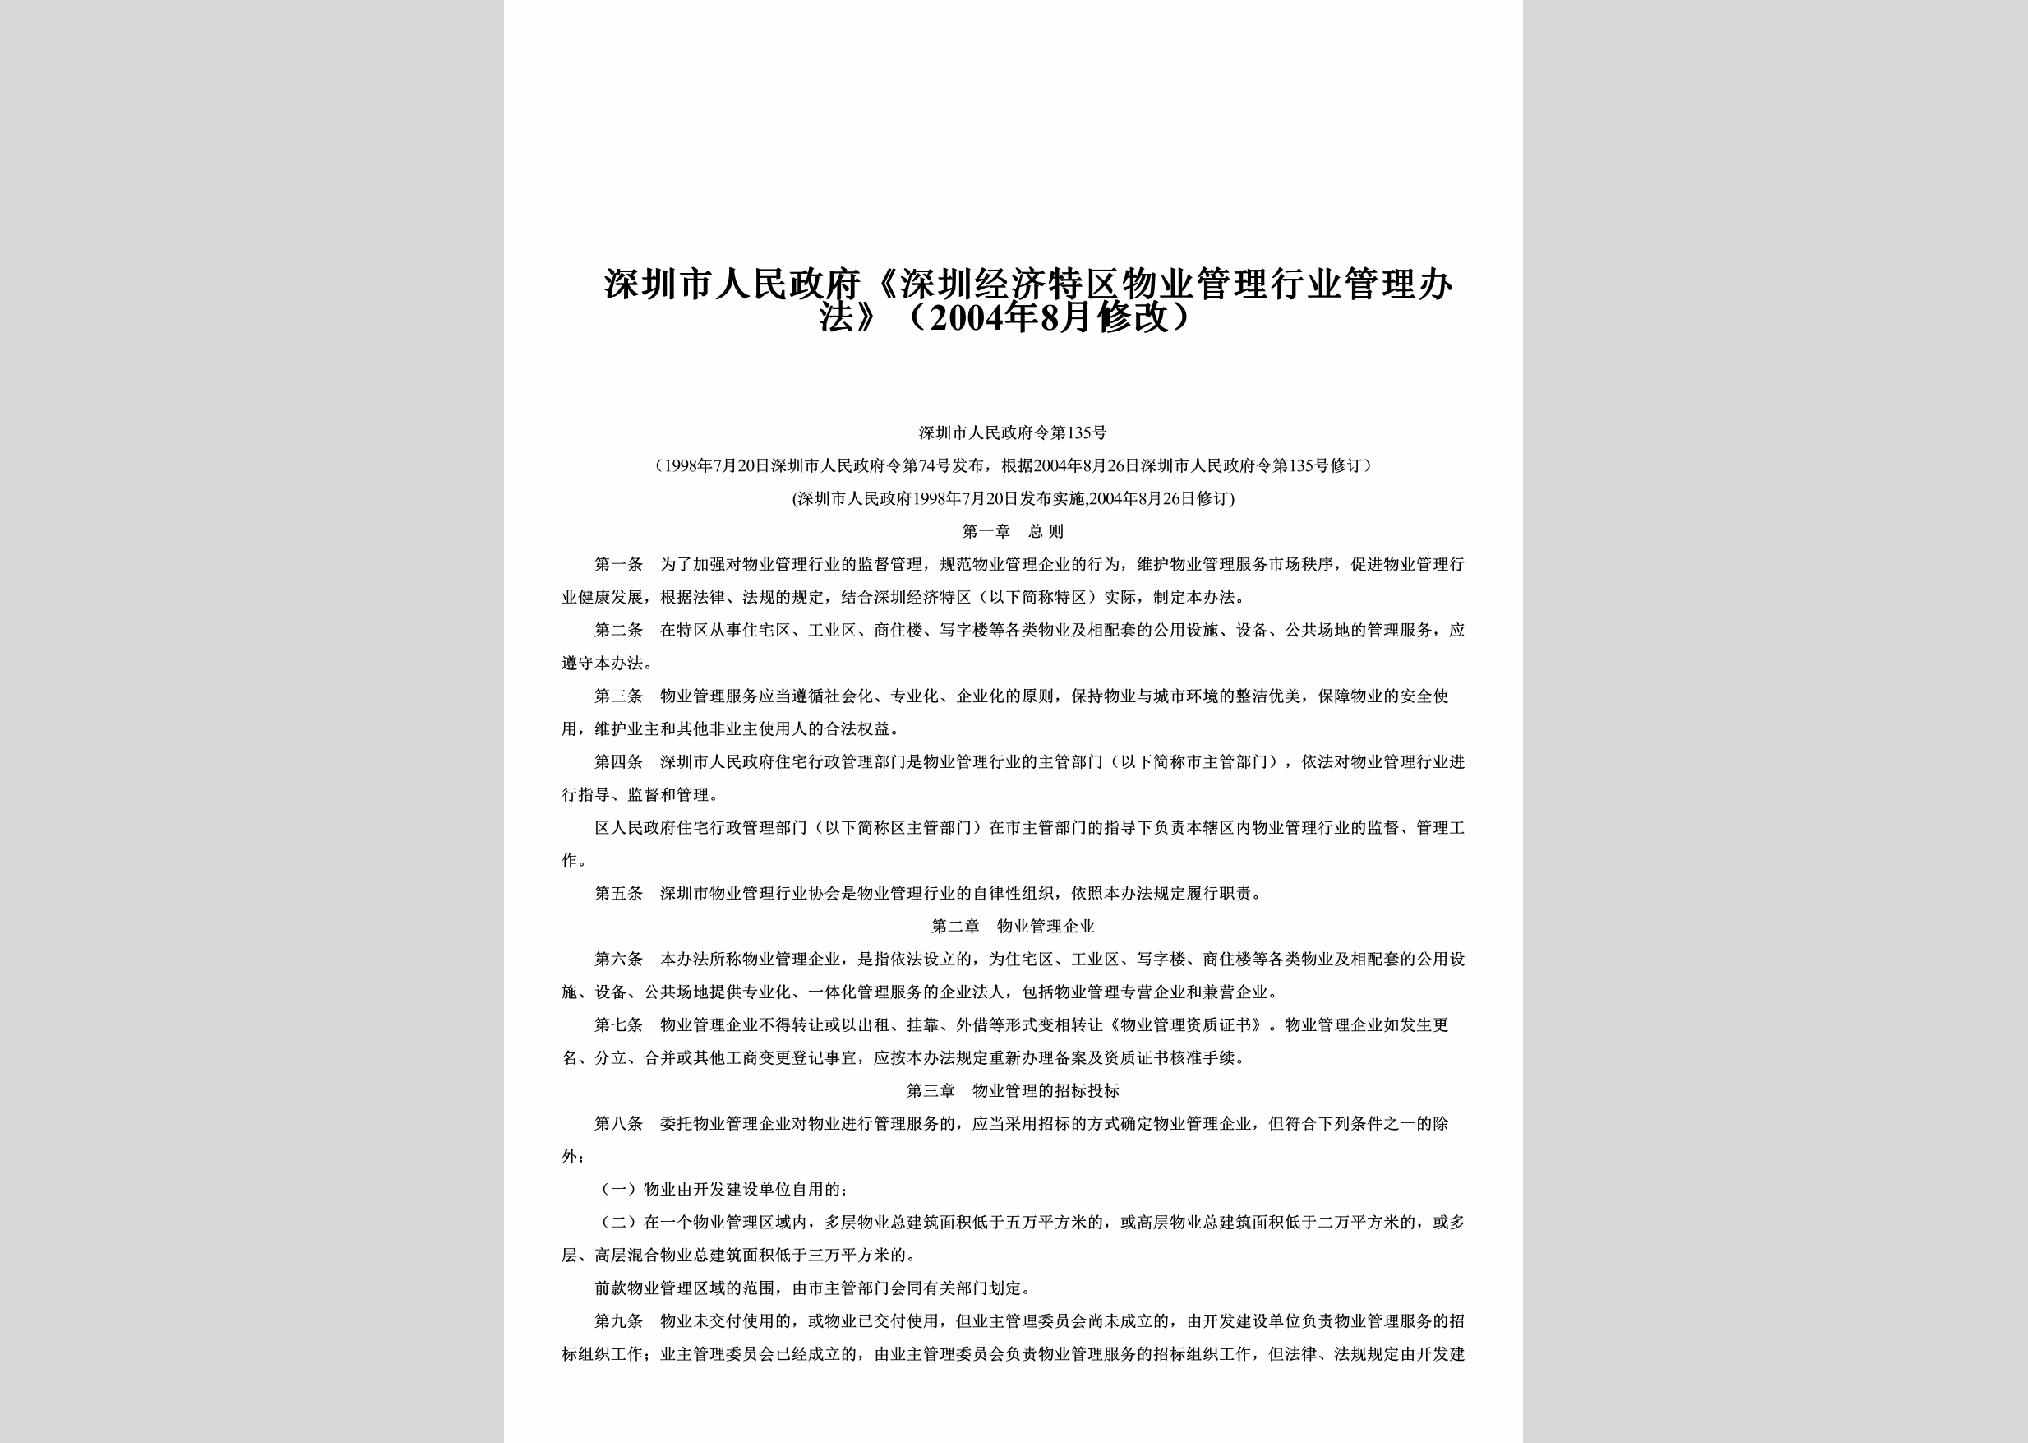 深圳市人民政府令第135号：《深圳经济特区物业管理行业管理办法》（2004年8月修改）